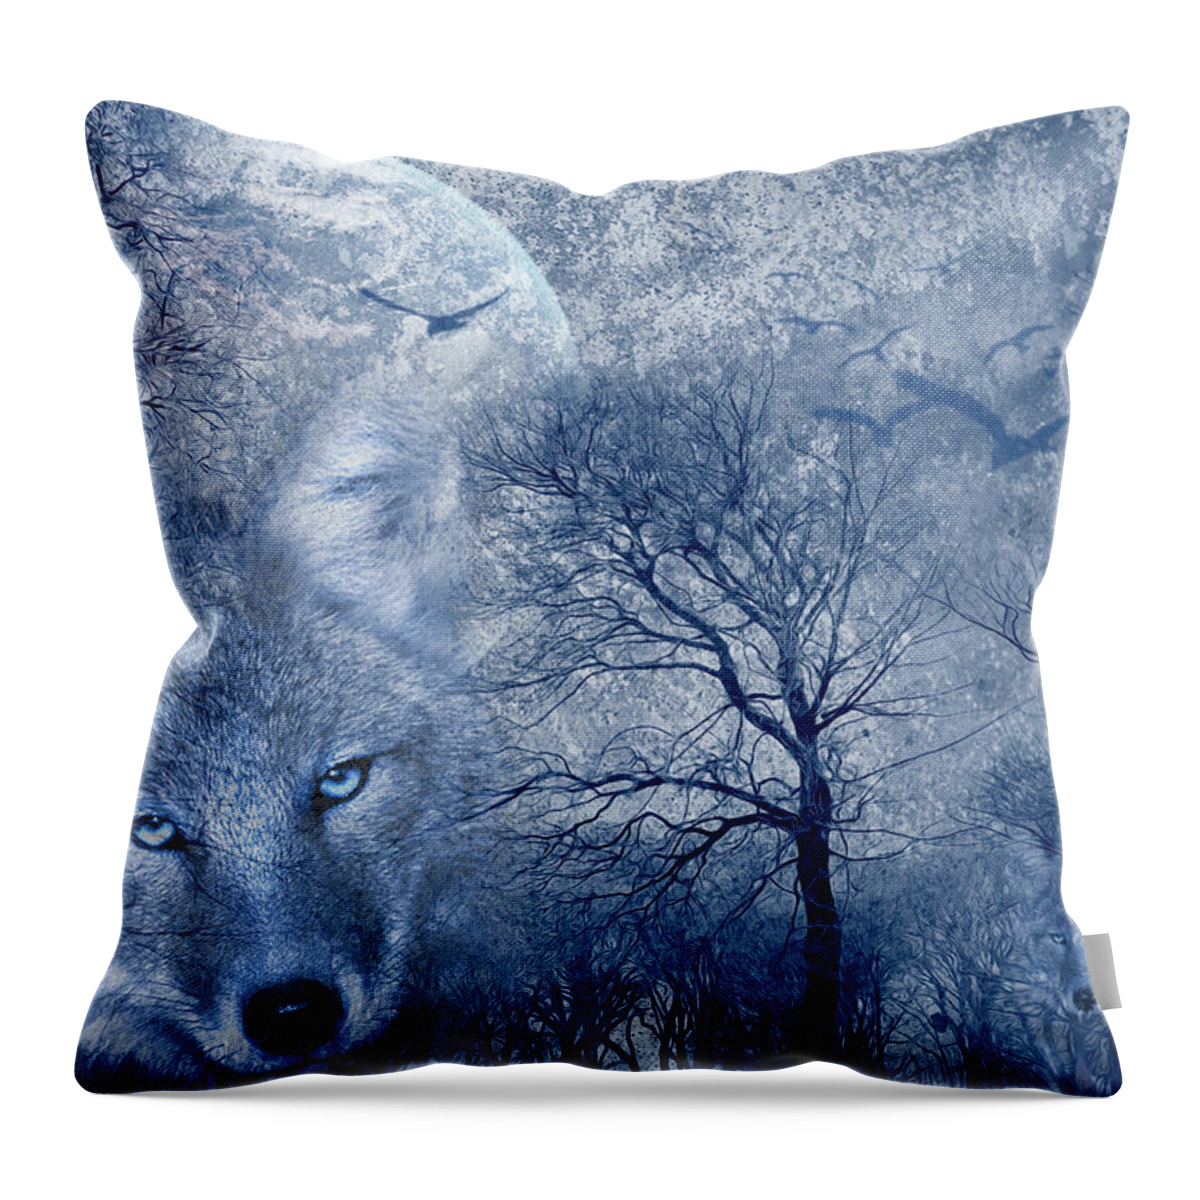 Art Throw Pillow featuring the digital art Wolf by Svetlana Sewell